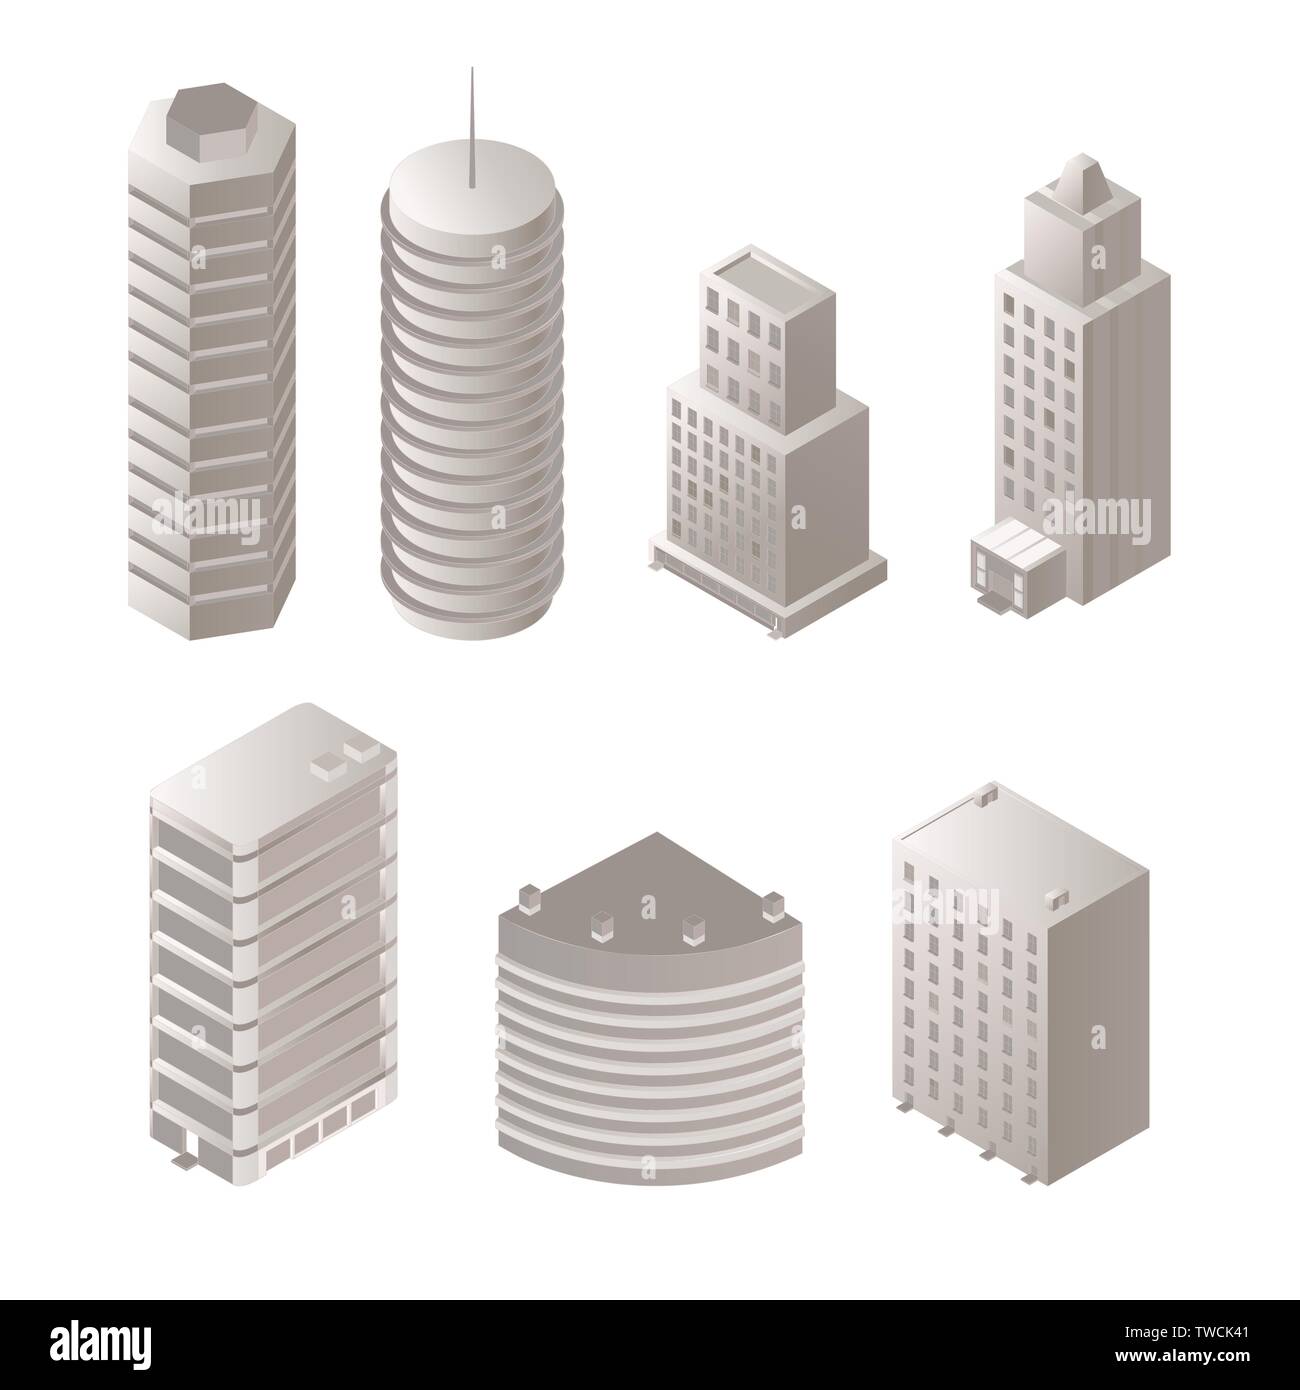 Städtische Gebäude isometrische Abbildungen. Moderne Architektur, monochrome Wolkenkratzer. Futuristische Office Center, hoch aufragenden Türmen aus Metall und Glas, 3d-Wohngebiet Konstruktionen Stock Vektor